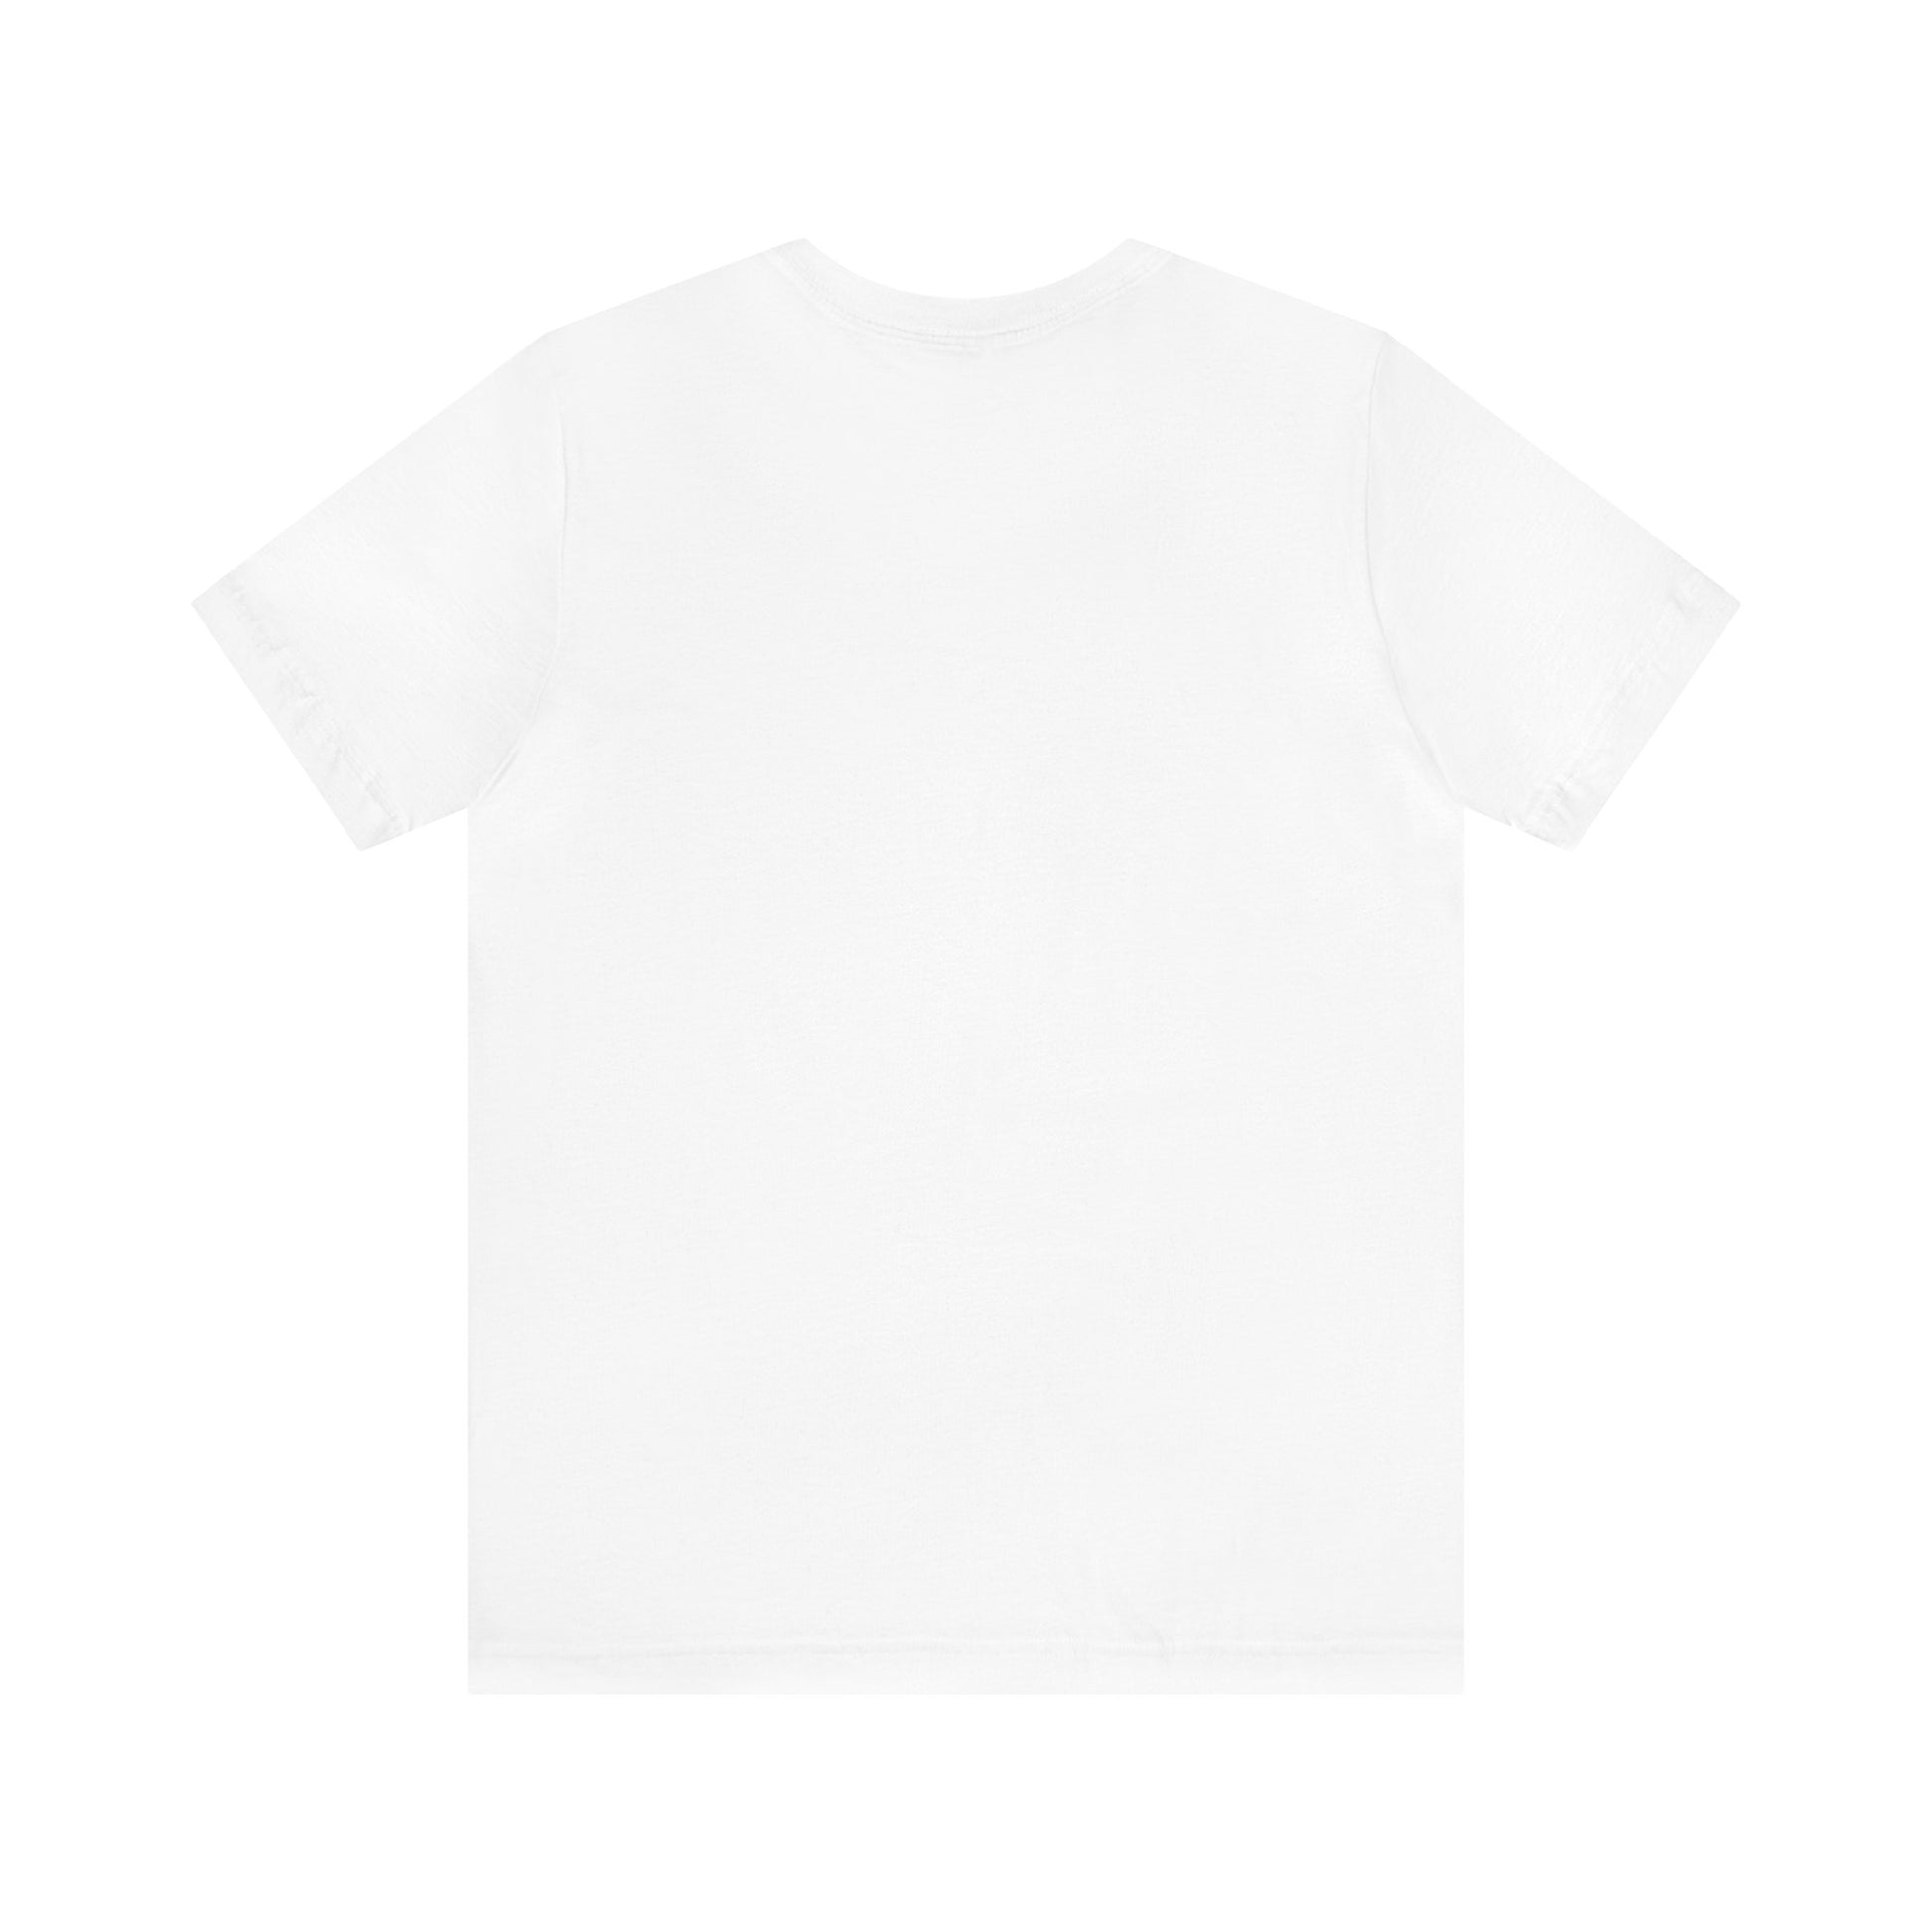 Smokephin ASD T-Shirt